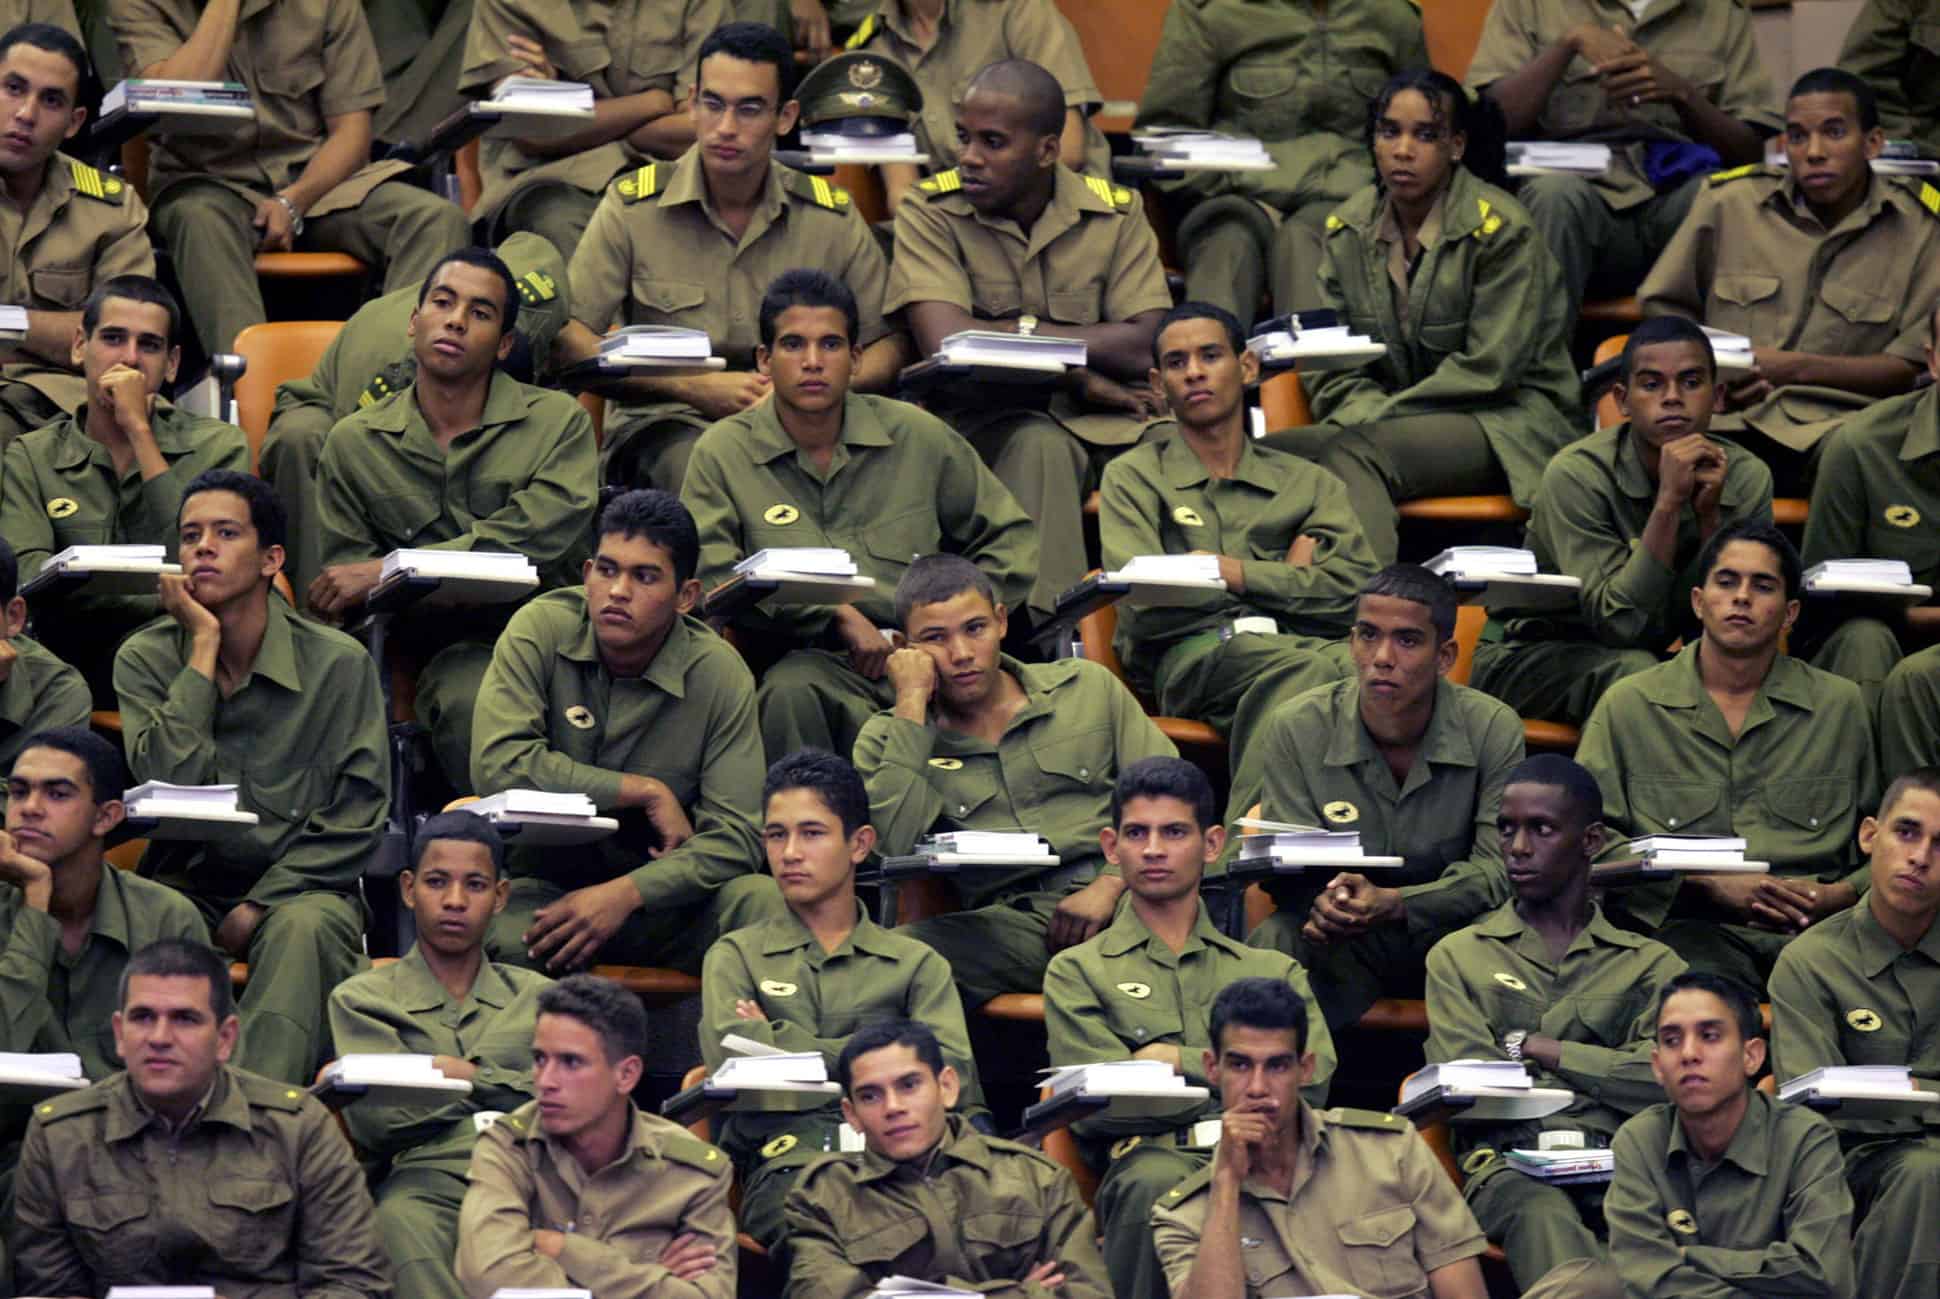 ANÁLISIS: ¿En una Cuba libre será necesario el Ejército?